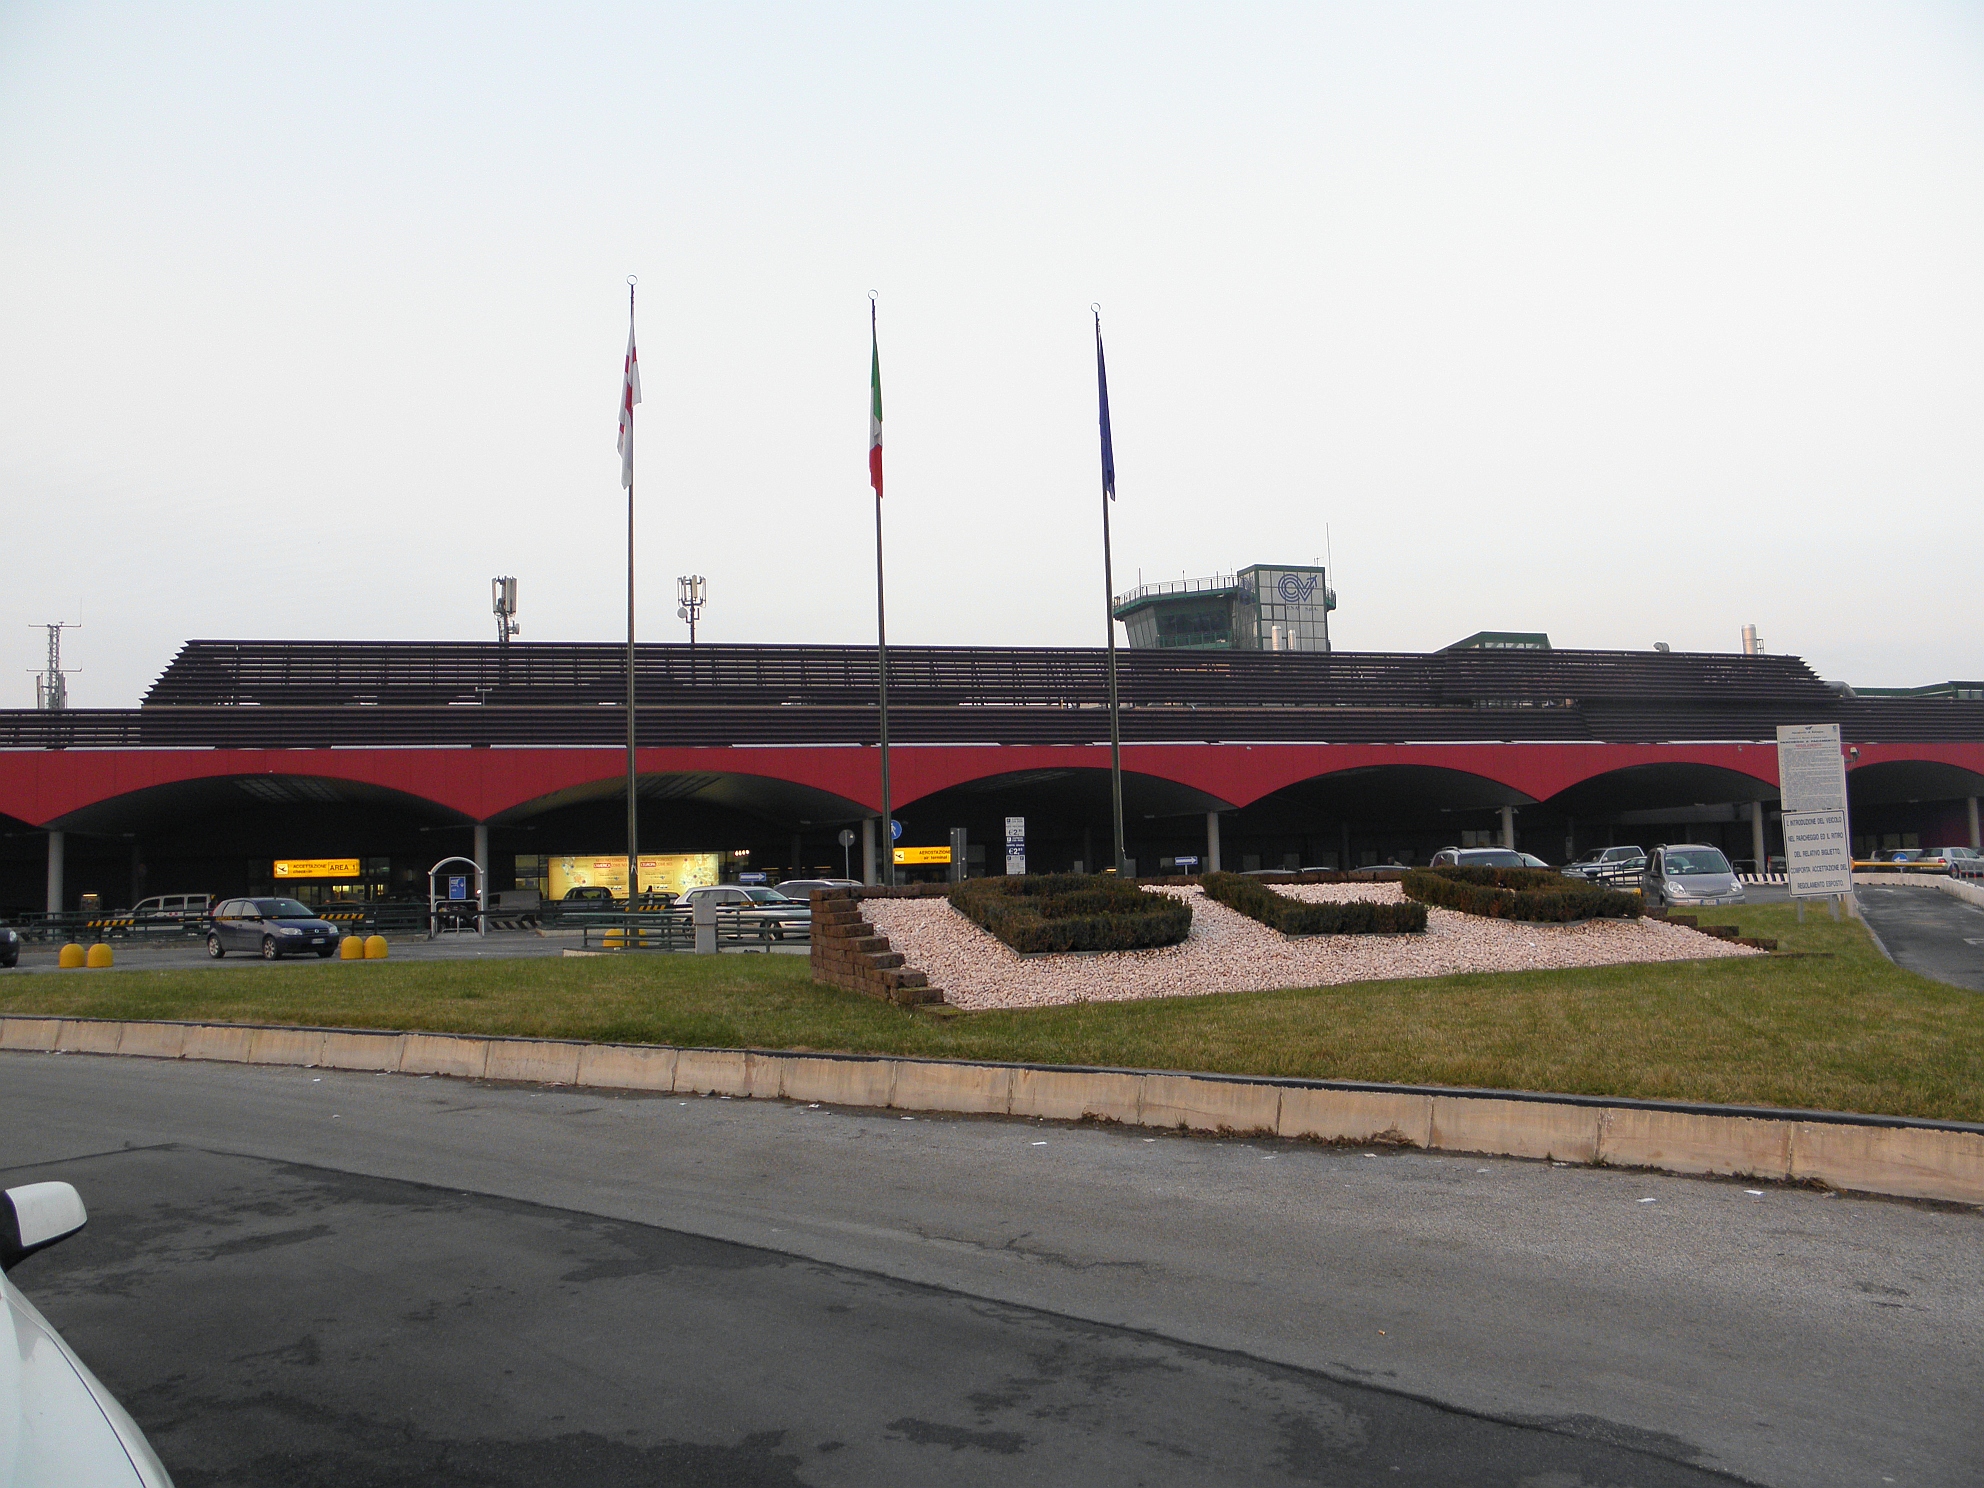 Aeroporto di Bologna, photo by Threecharlie - Wikipedia